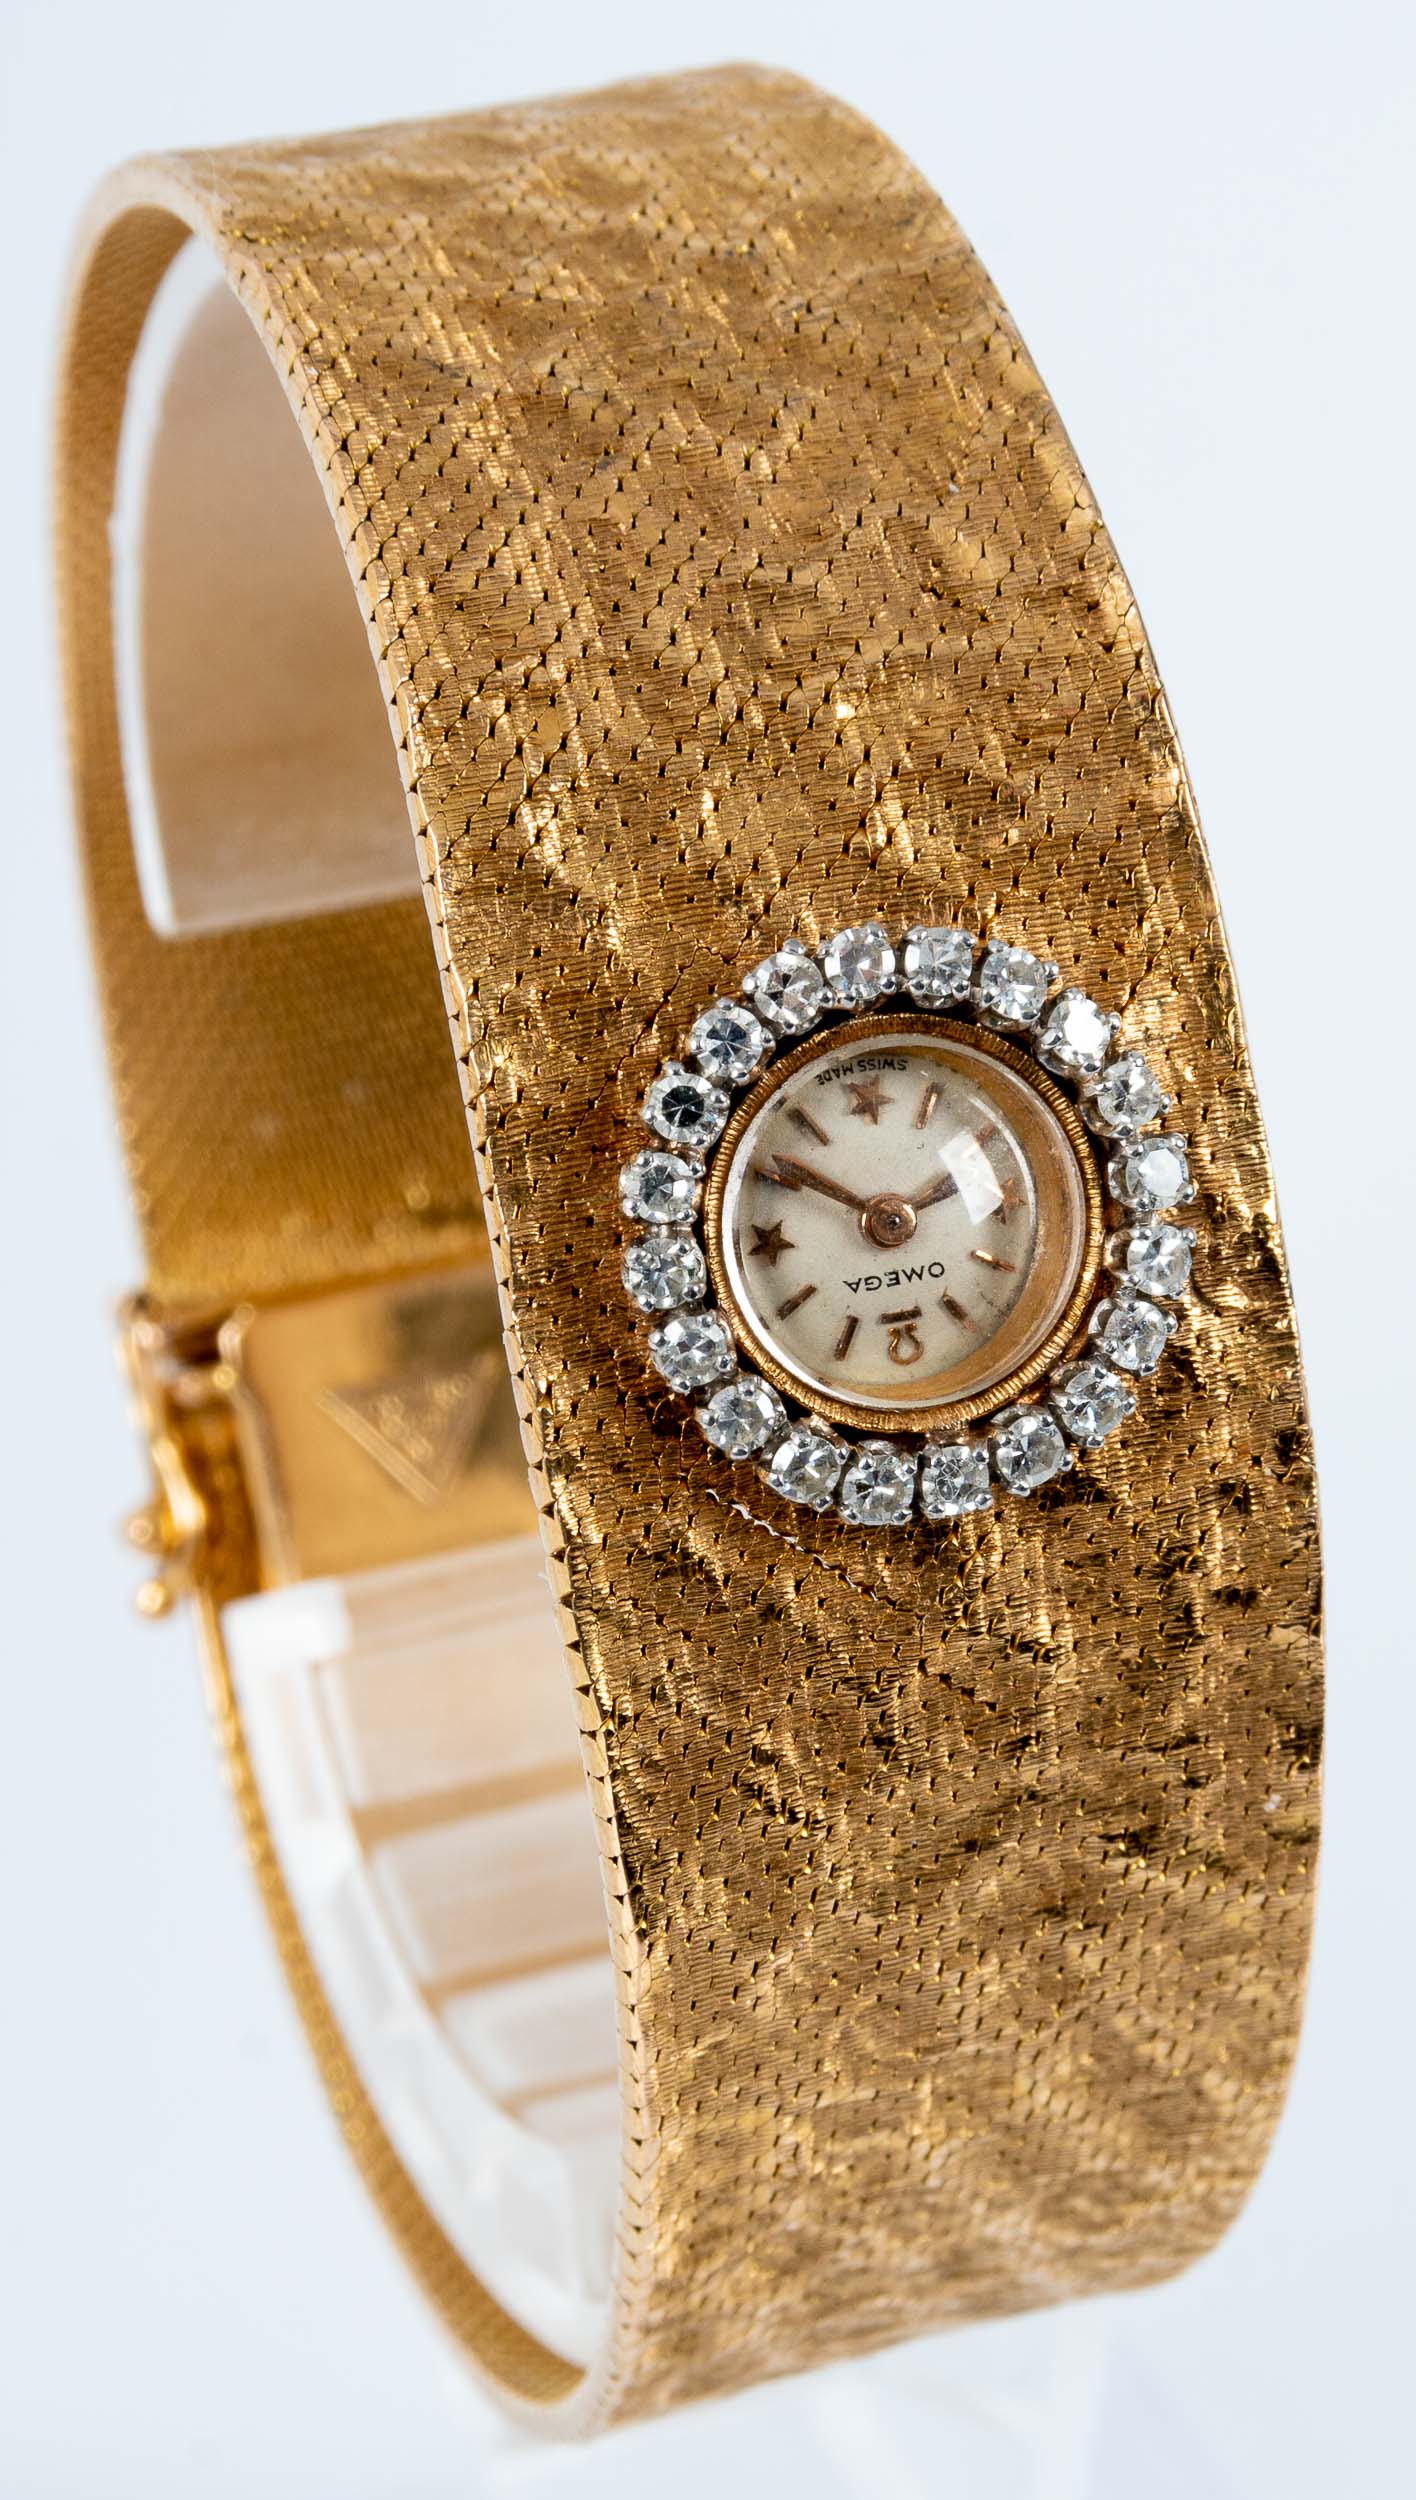 Außergewöhnliche Damen- Armbanduhr, das zur Mitte hin breiter werdende, in Hammerschlagoptik gearbe - Image 5 of 11